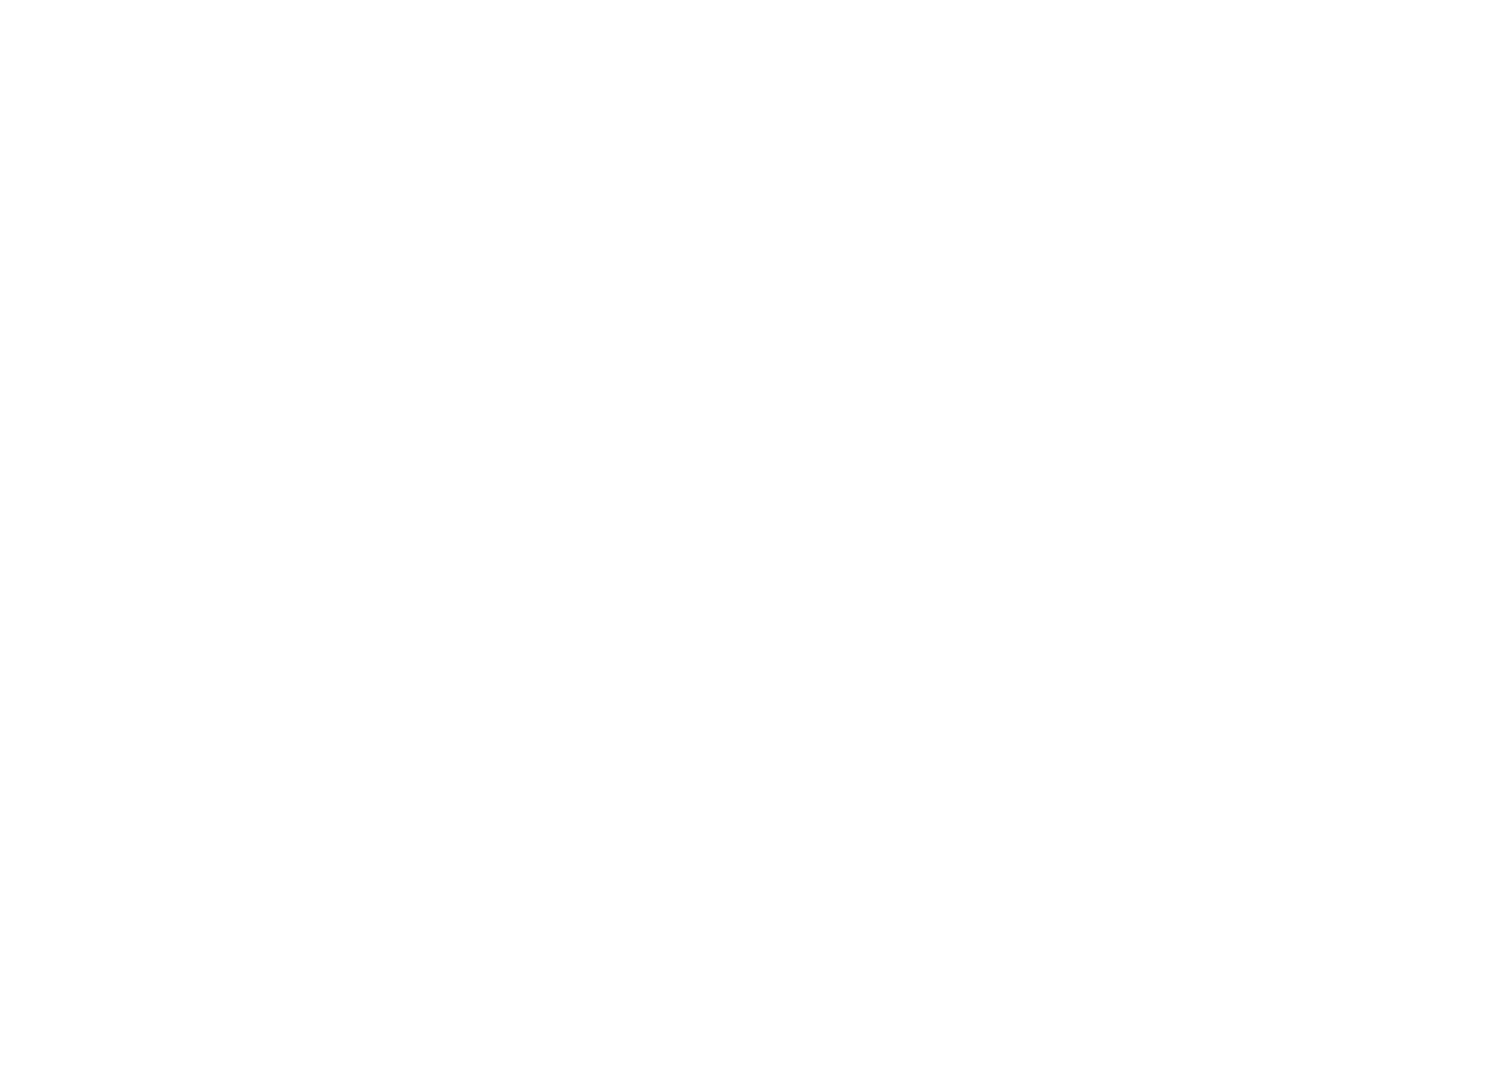 Cape Kiwanda RV Park